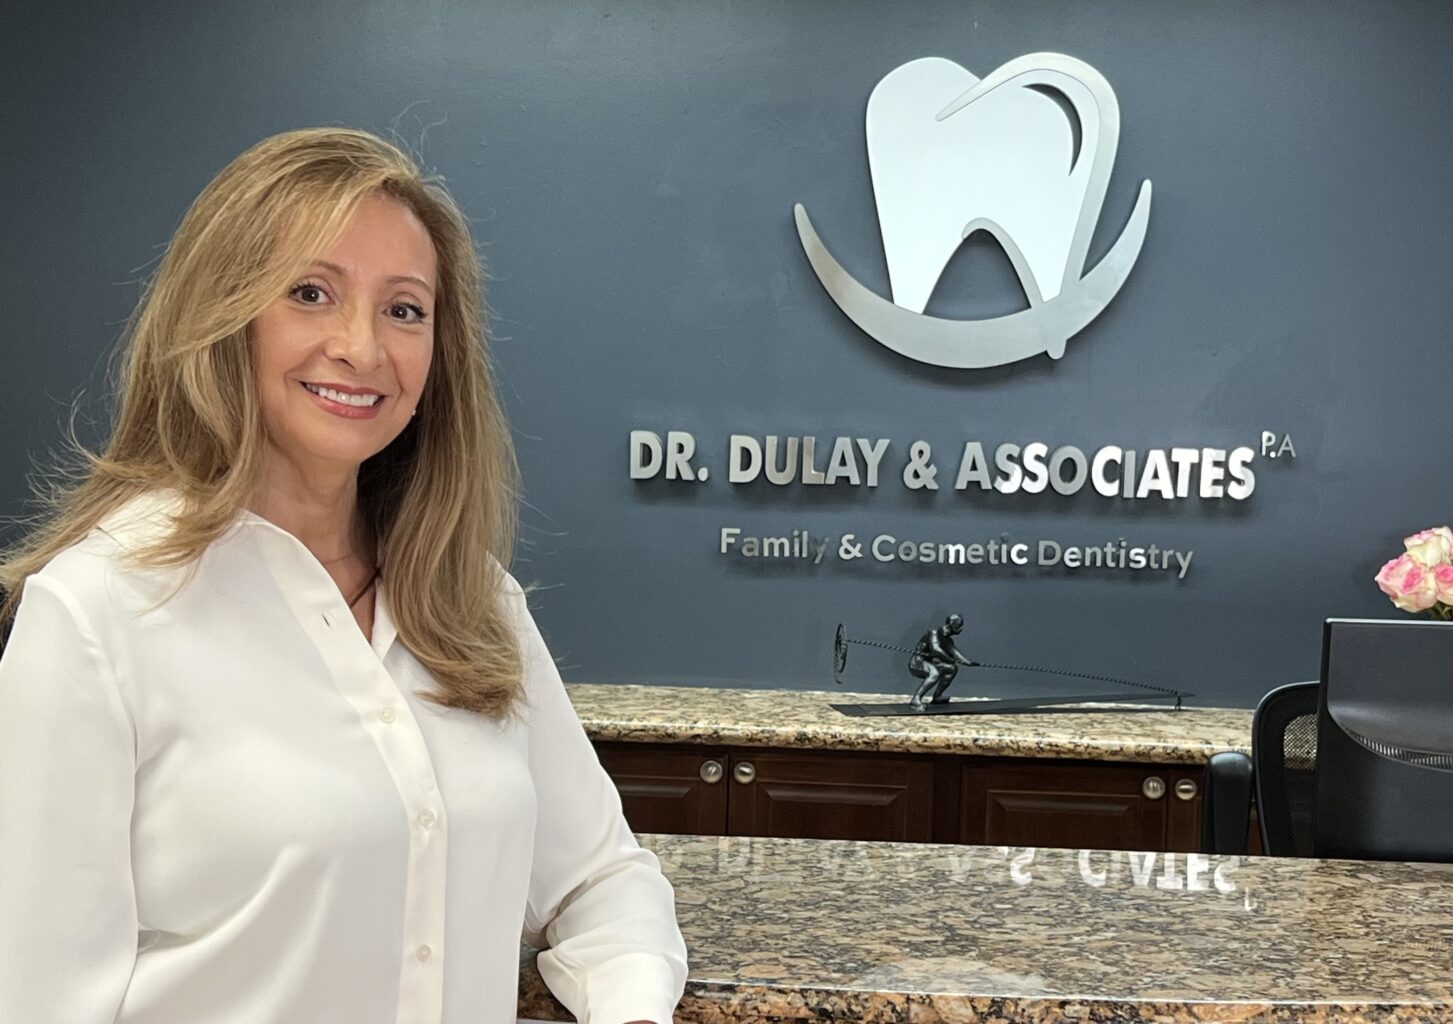 Dr. Dulay and Associates Dental Assistant - Pilar